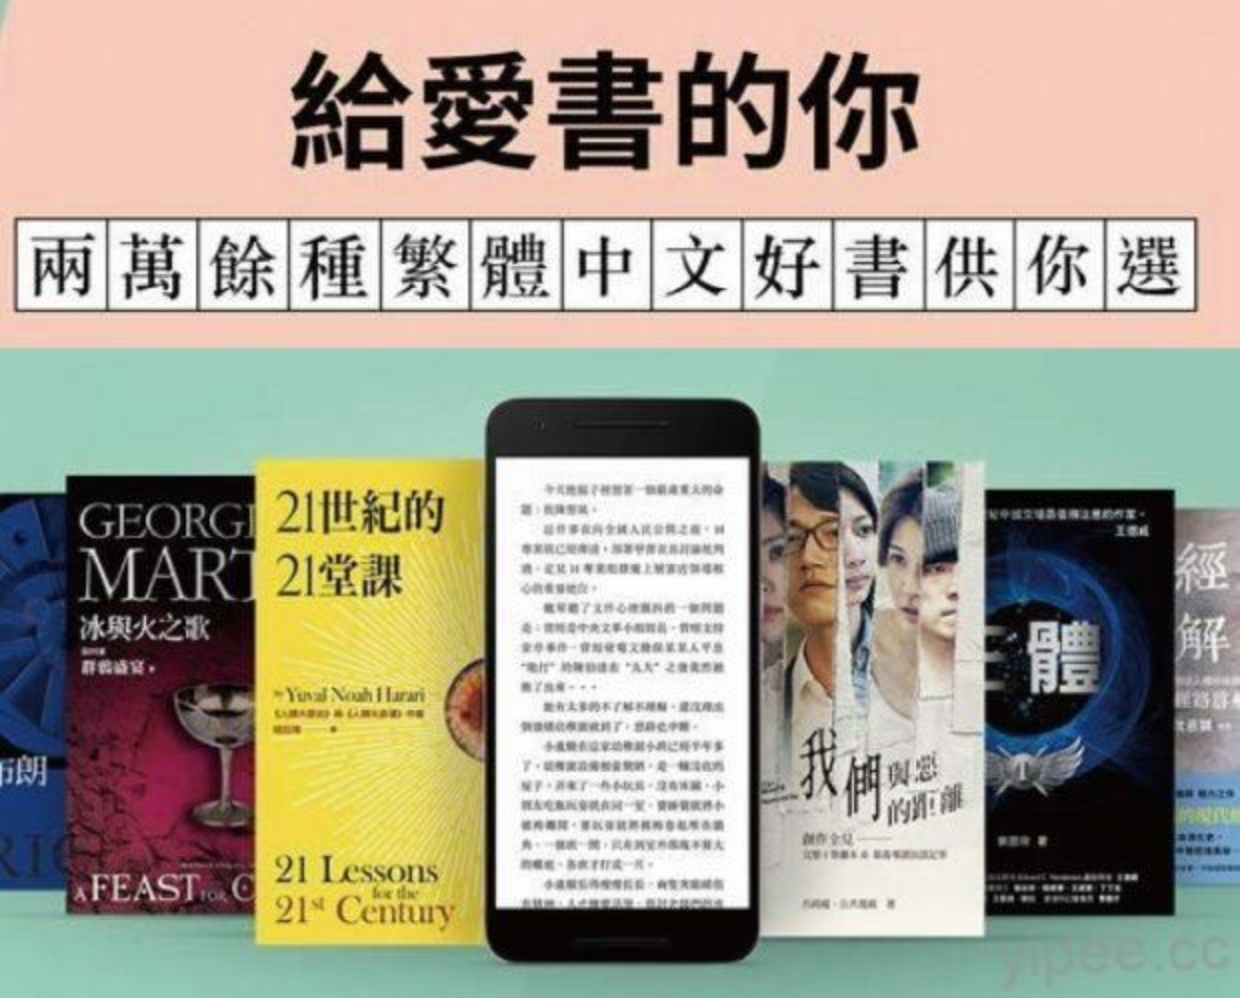 亞馬遜悄悄上架繁中電子書台灣市場版圖即將改變 信傳媒